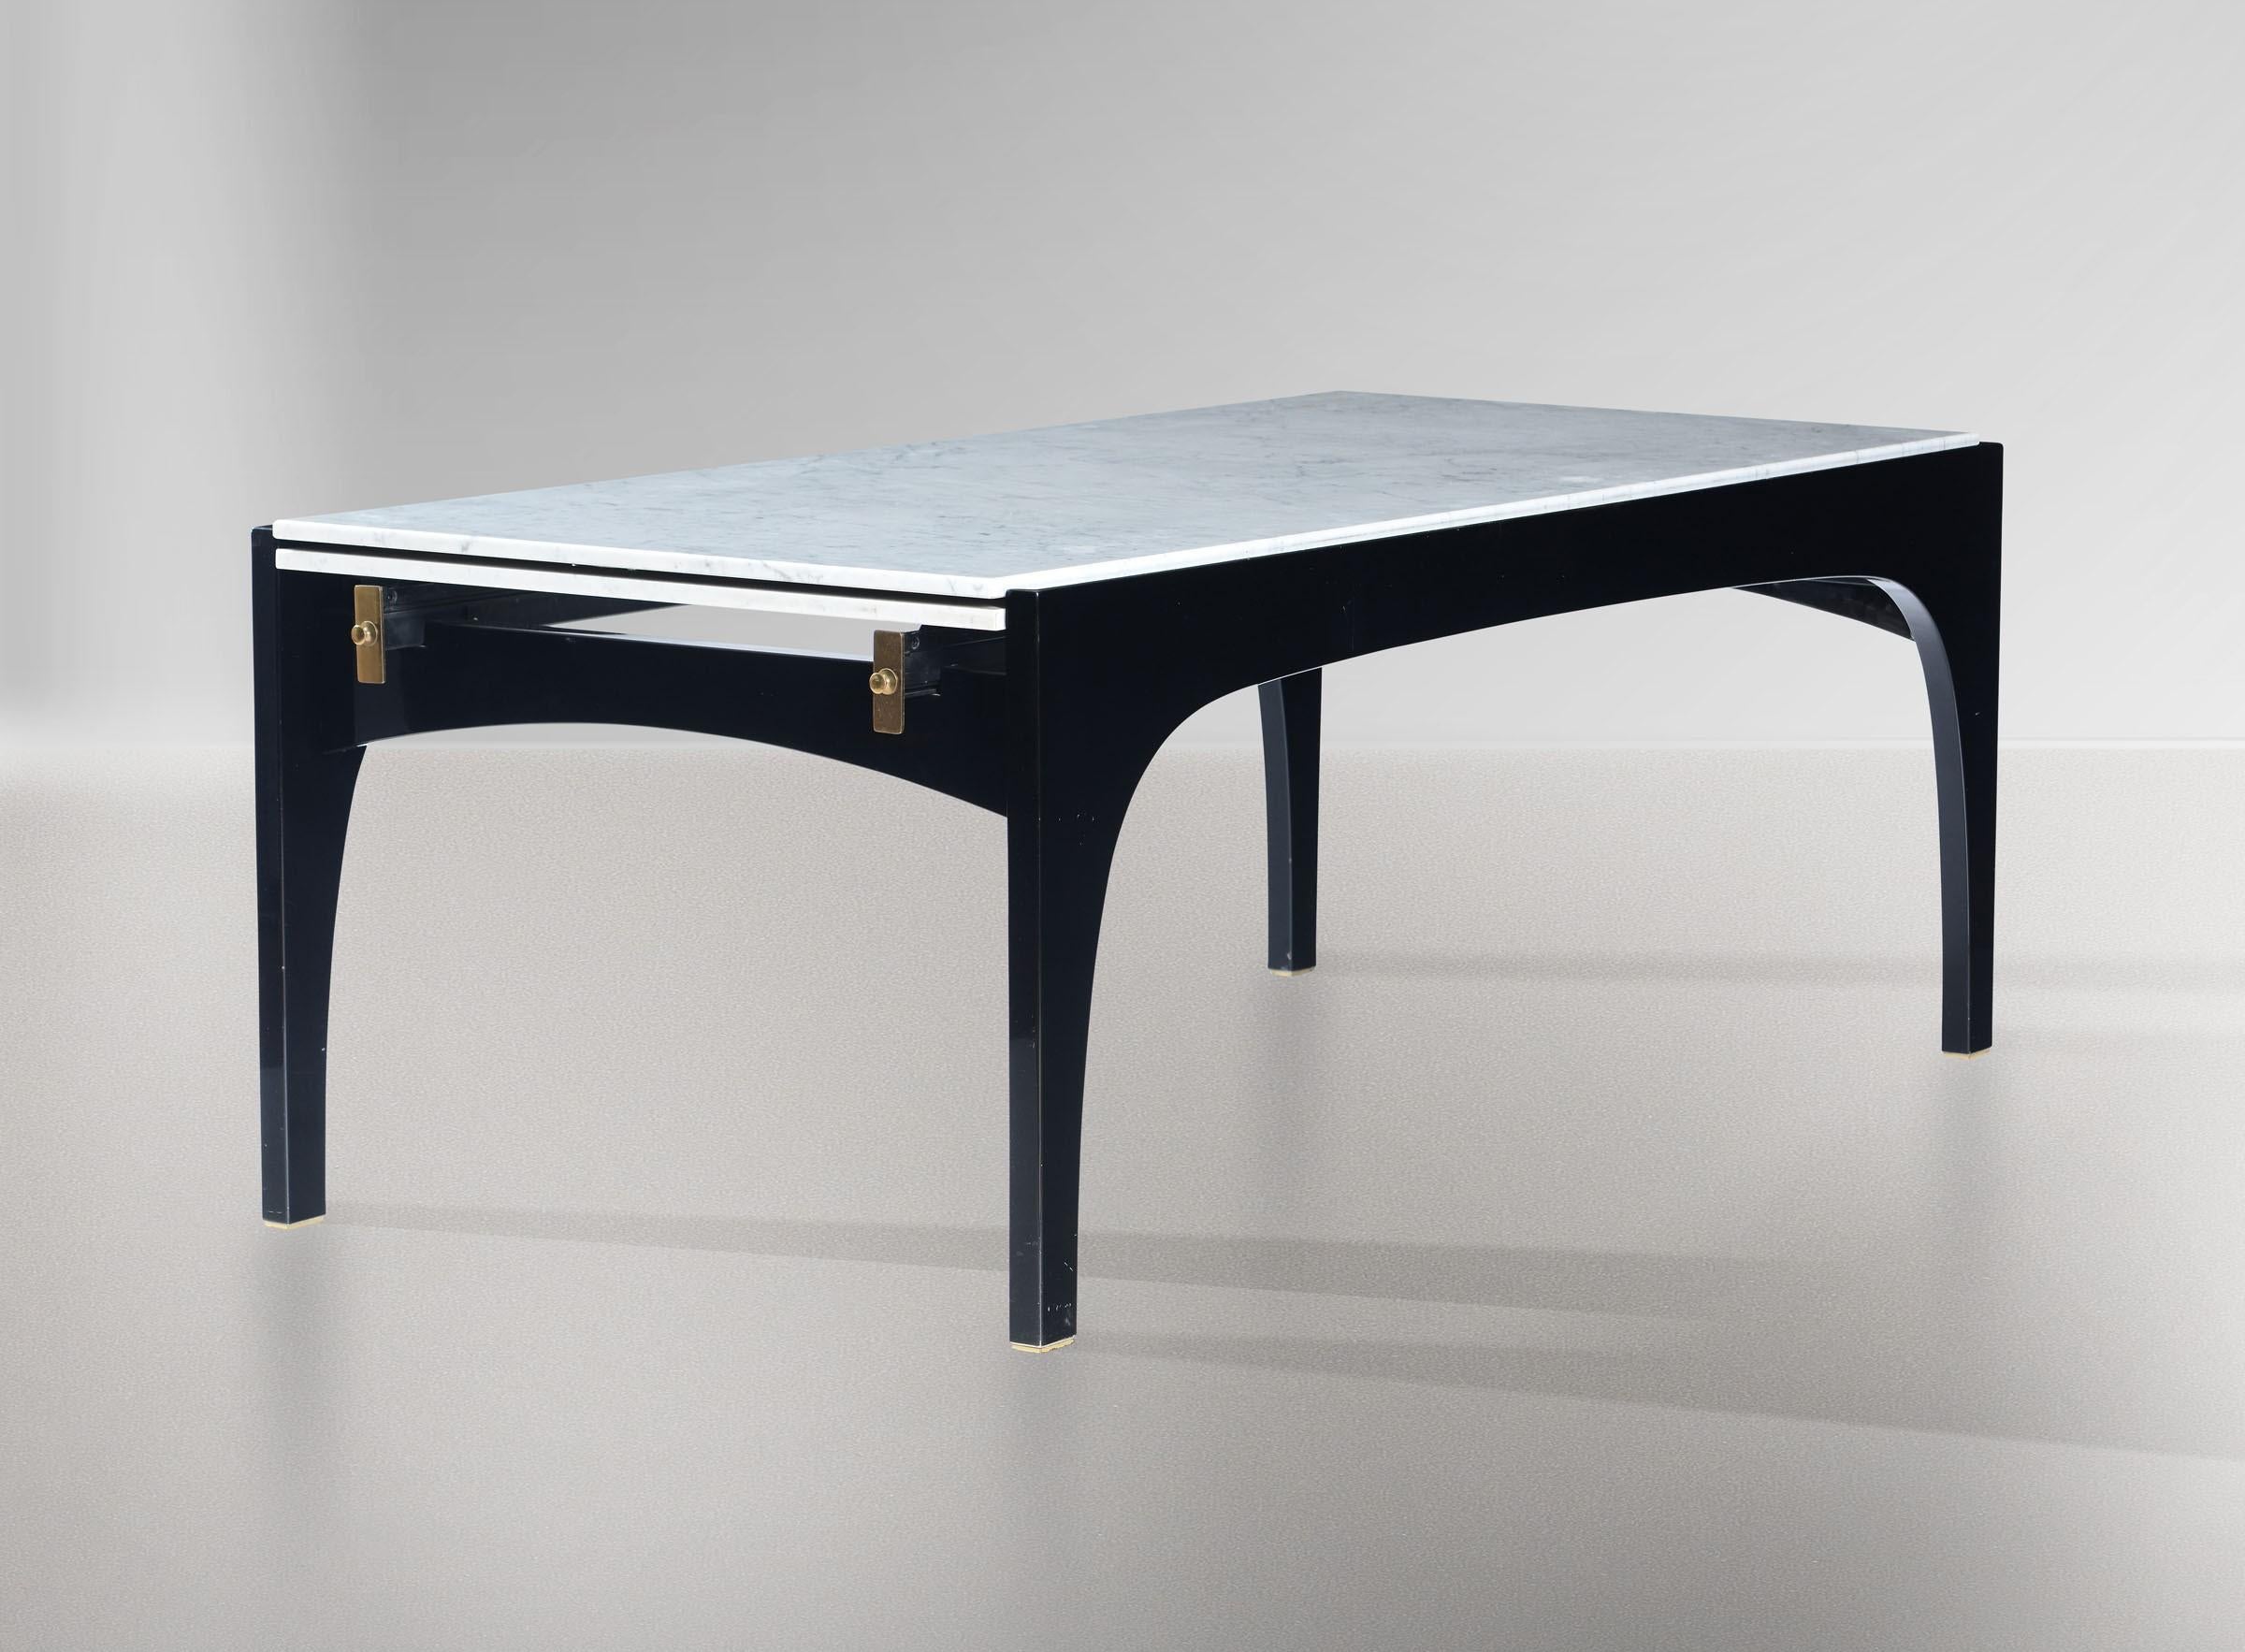 Ein außergewöhnlicher und seltener ausziehbarer Esstisch, entworfen von Ignazio Gardella für Misura Emme, Italien, um 1985. Dieser beeindruckende rechteckige Tisch ist schwarz lackiert mit Messingdetails und hat ein erstaunliches System, um die